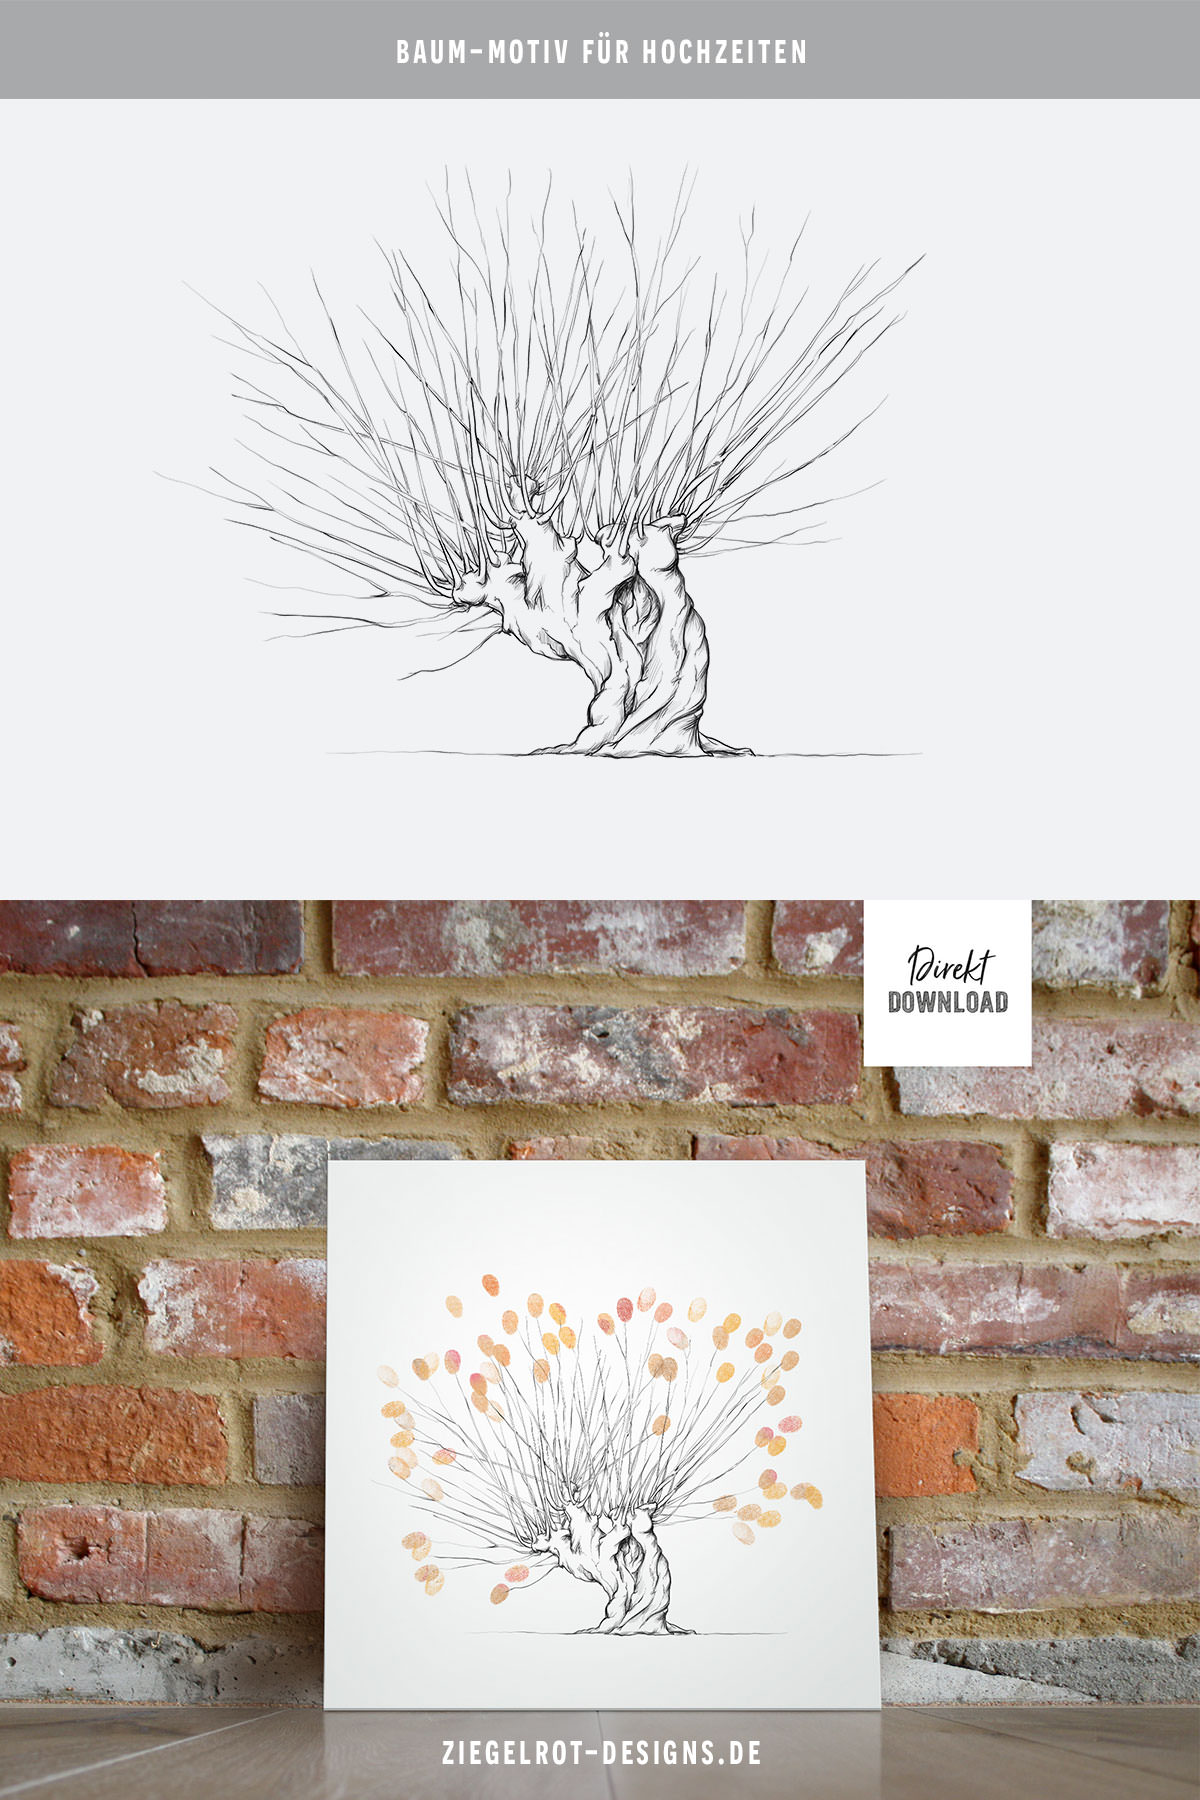 Baum-Motiv für Hochzeiten, Baum für Fingerabdrücke, Illustration Baum mit Kopfweide, Digitales Produkt, Download